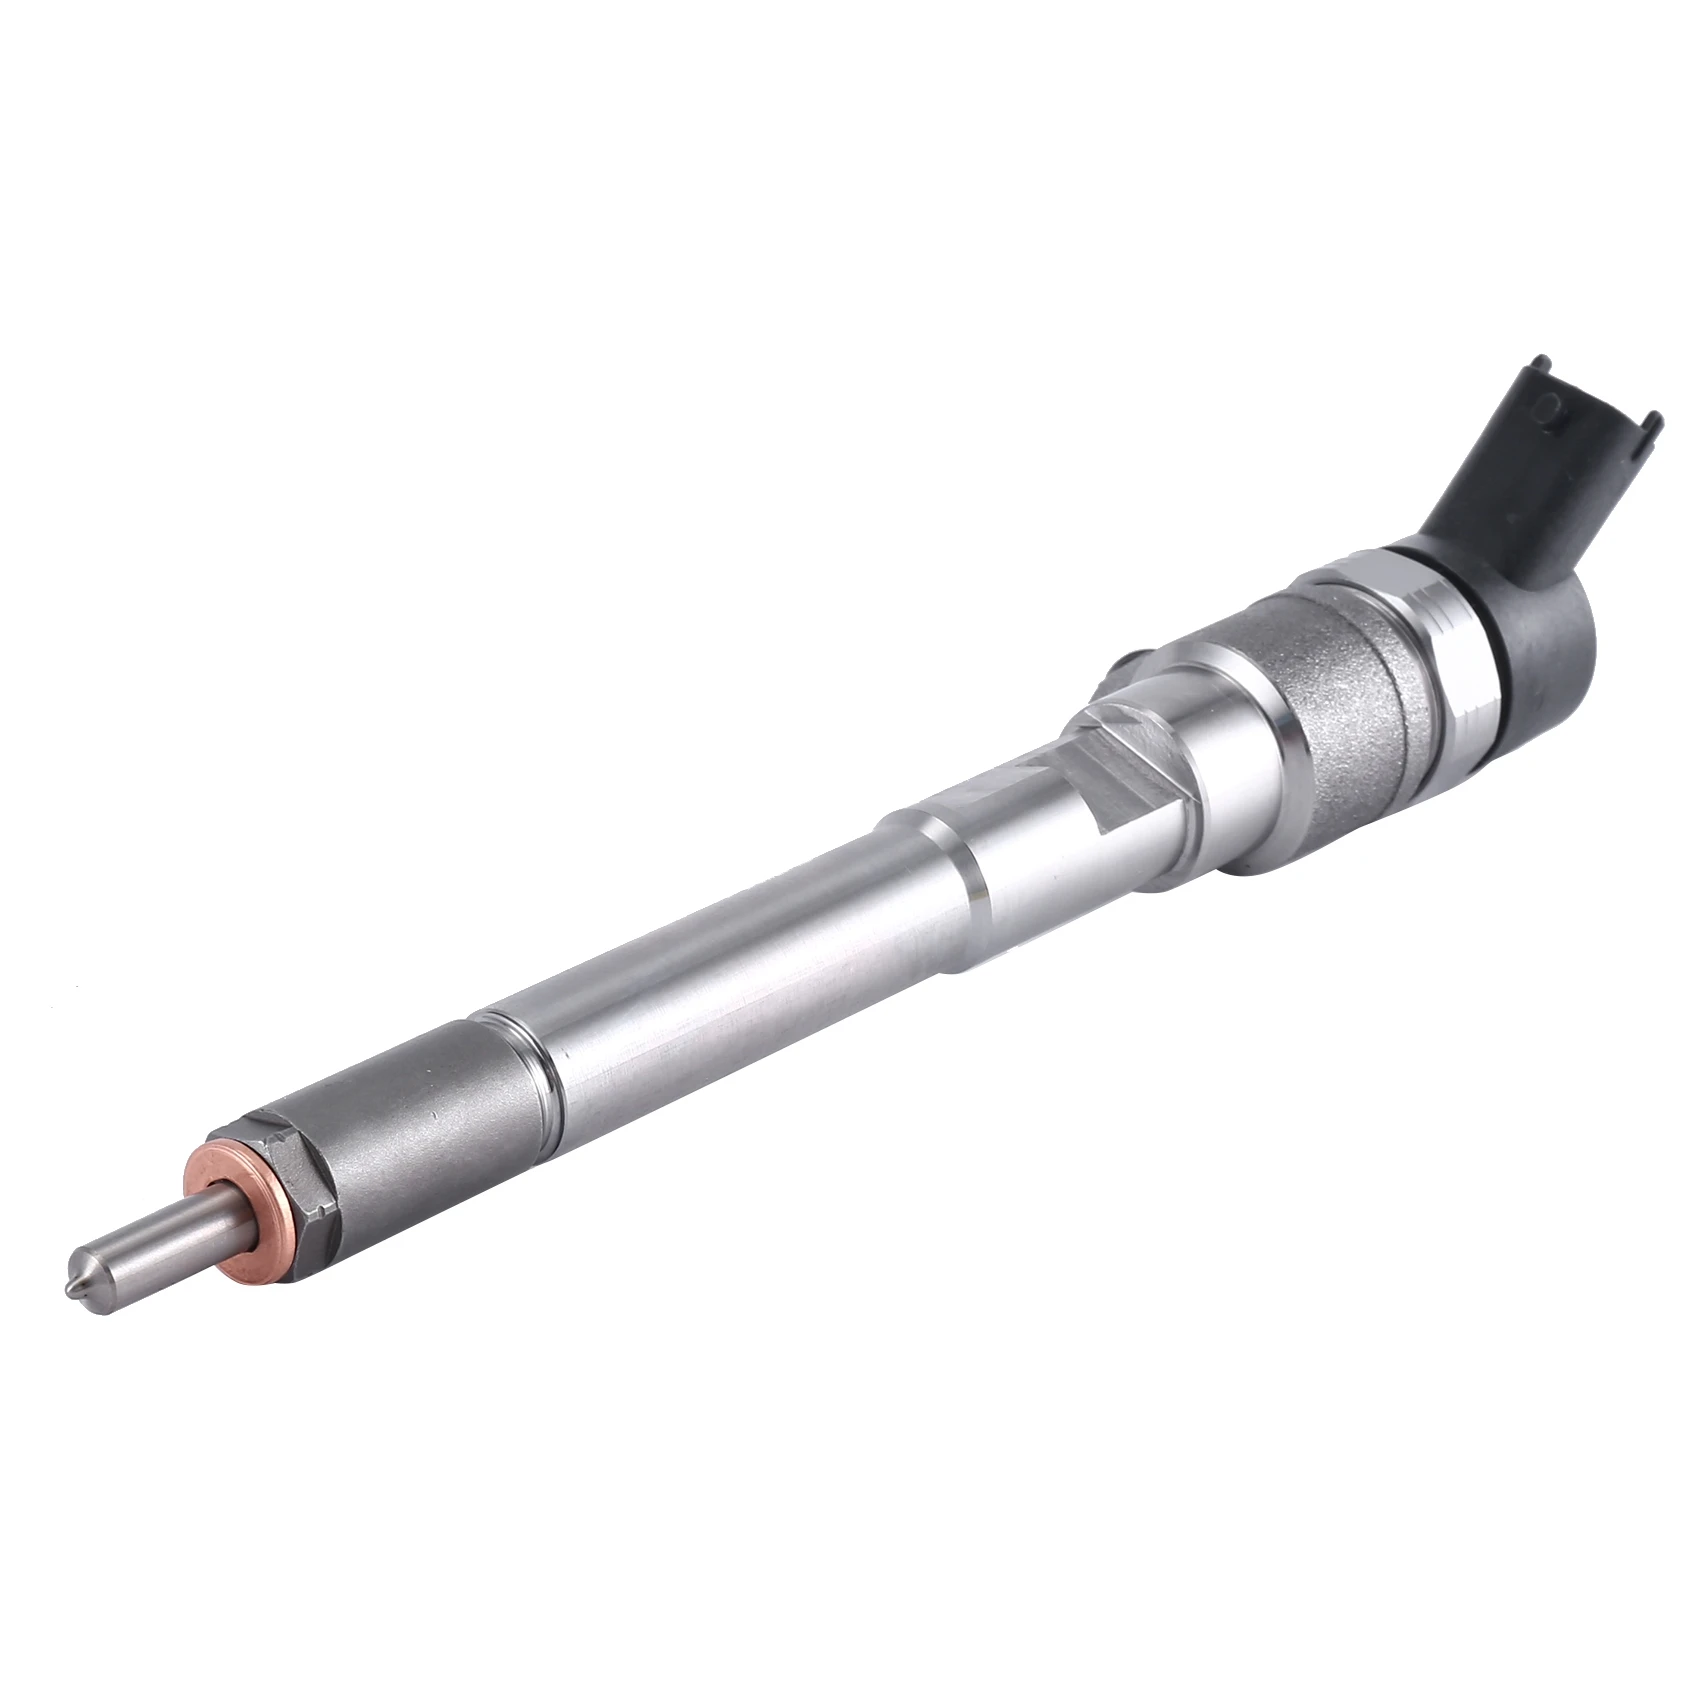 

New Crude Oil Common Rail Fuel Injector Nozzle 0445110695